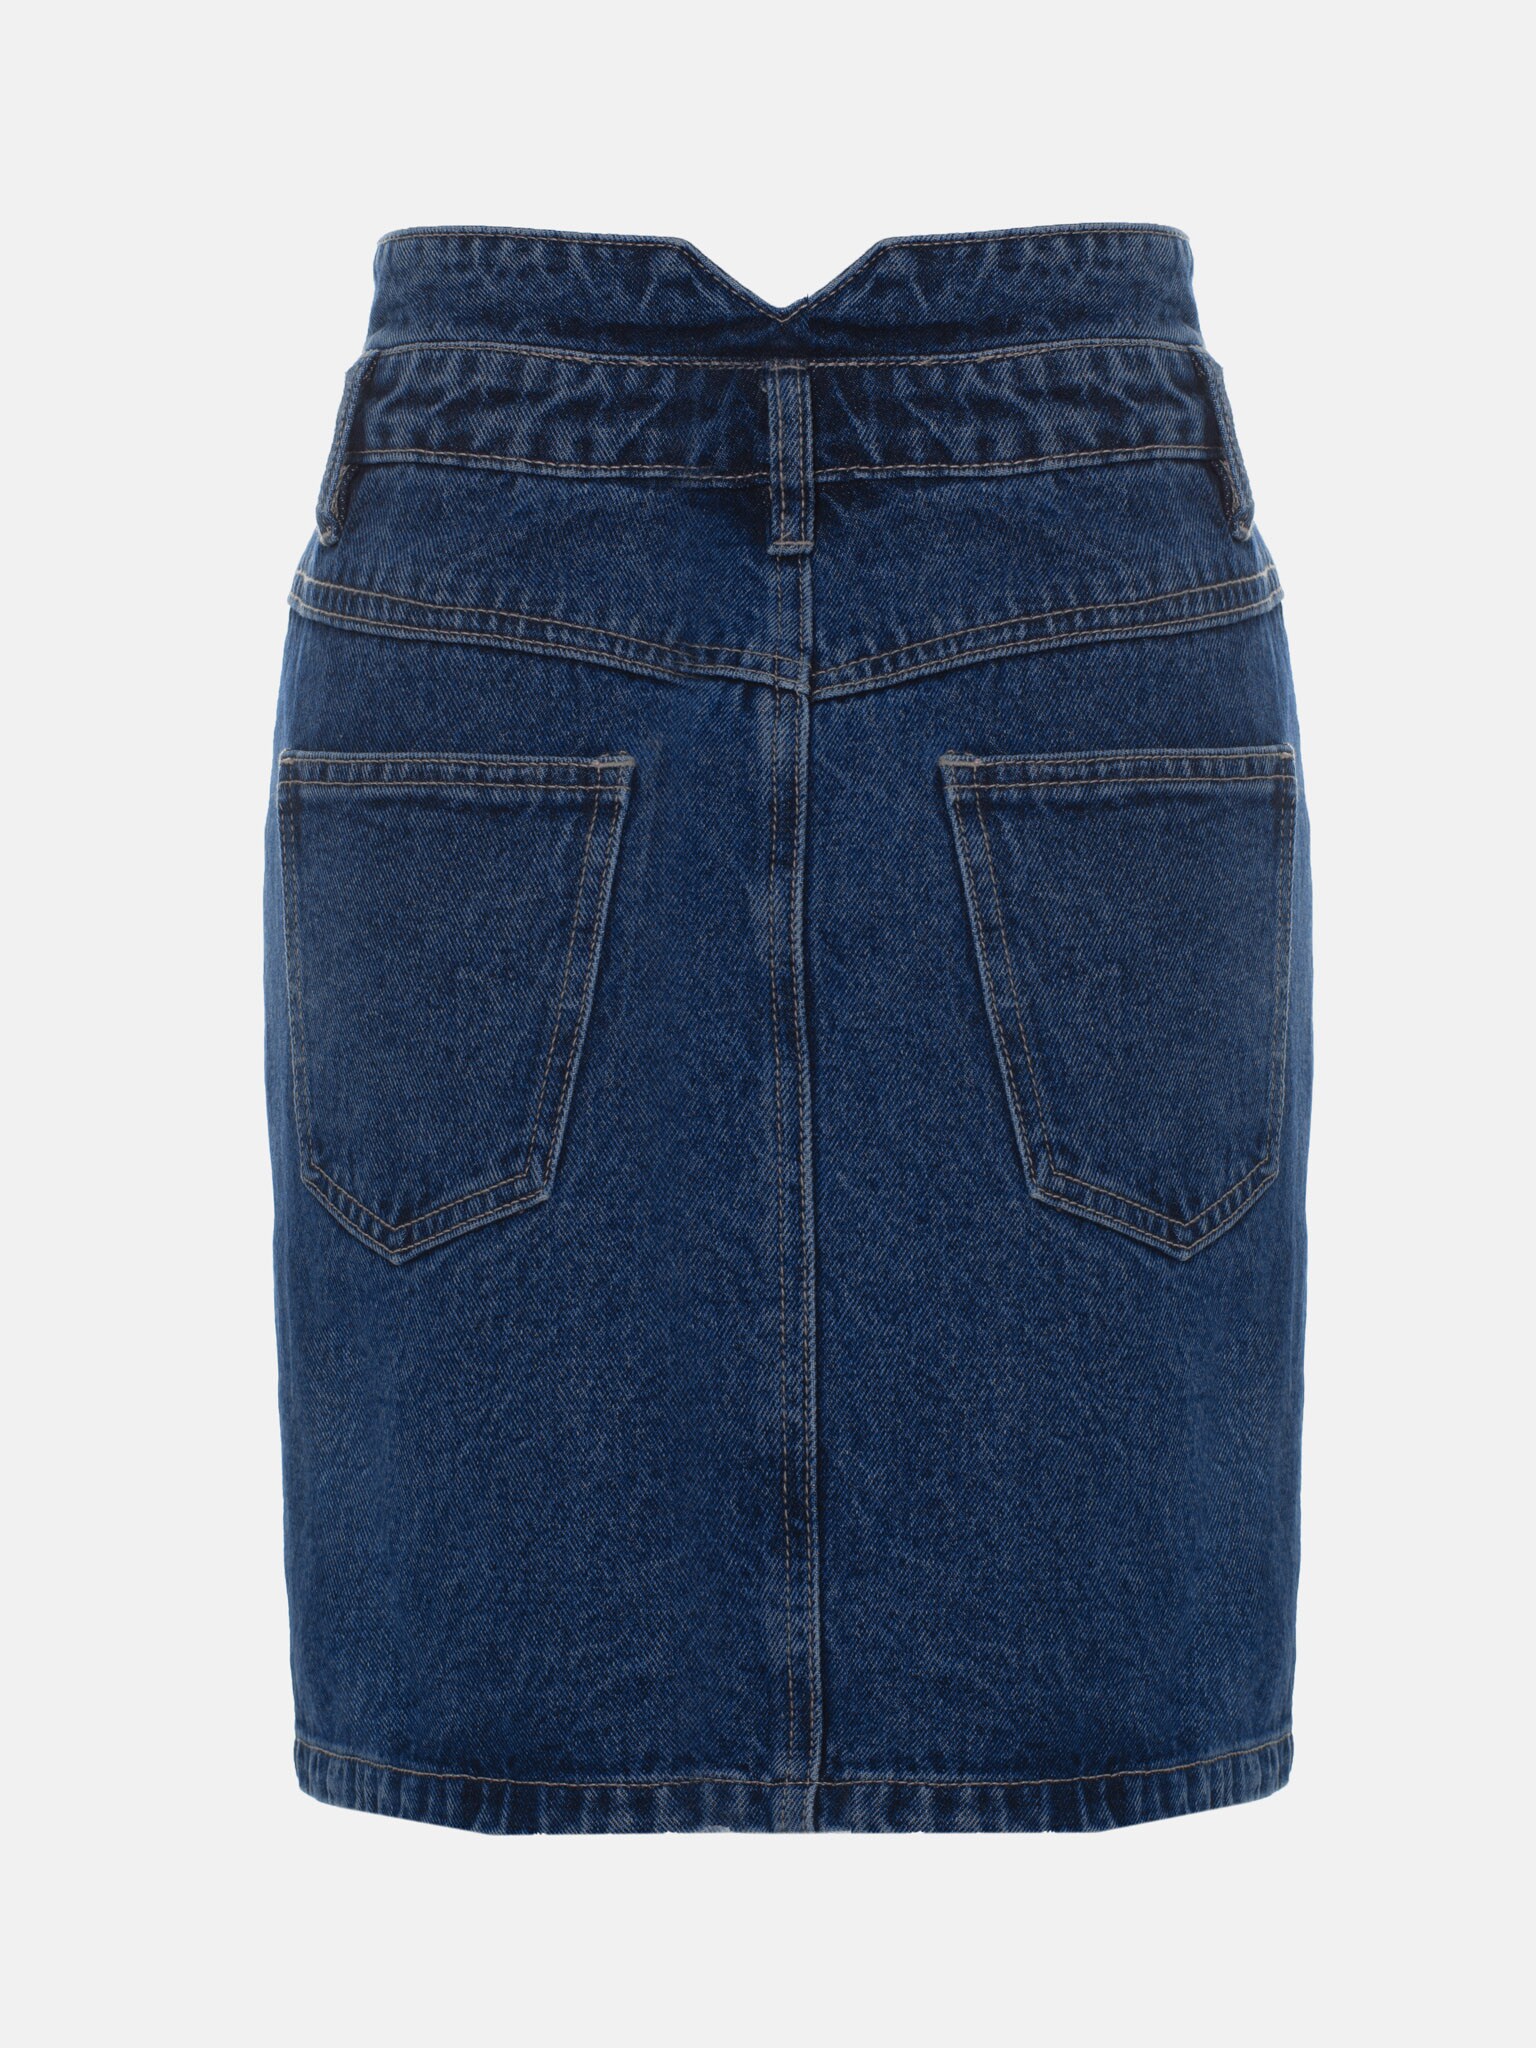 LICHI - Online fashion store :: Buttoned denim mini skirt